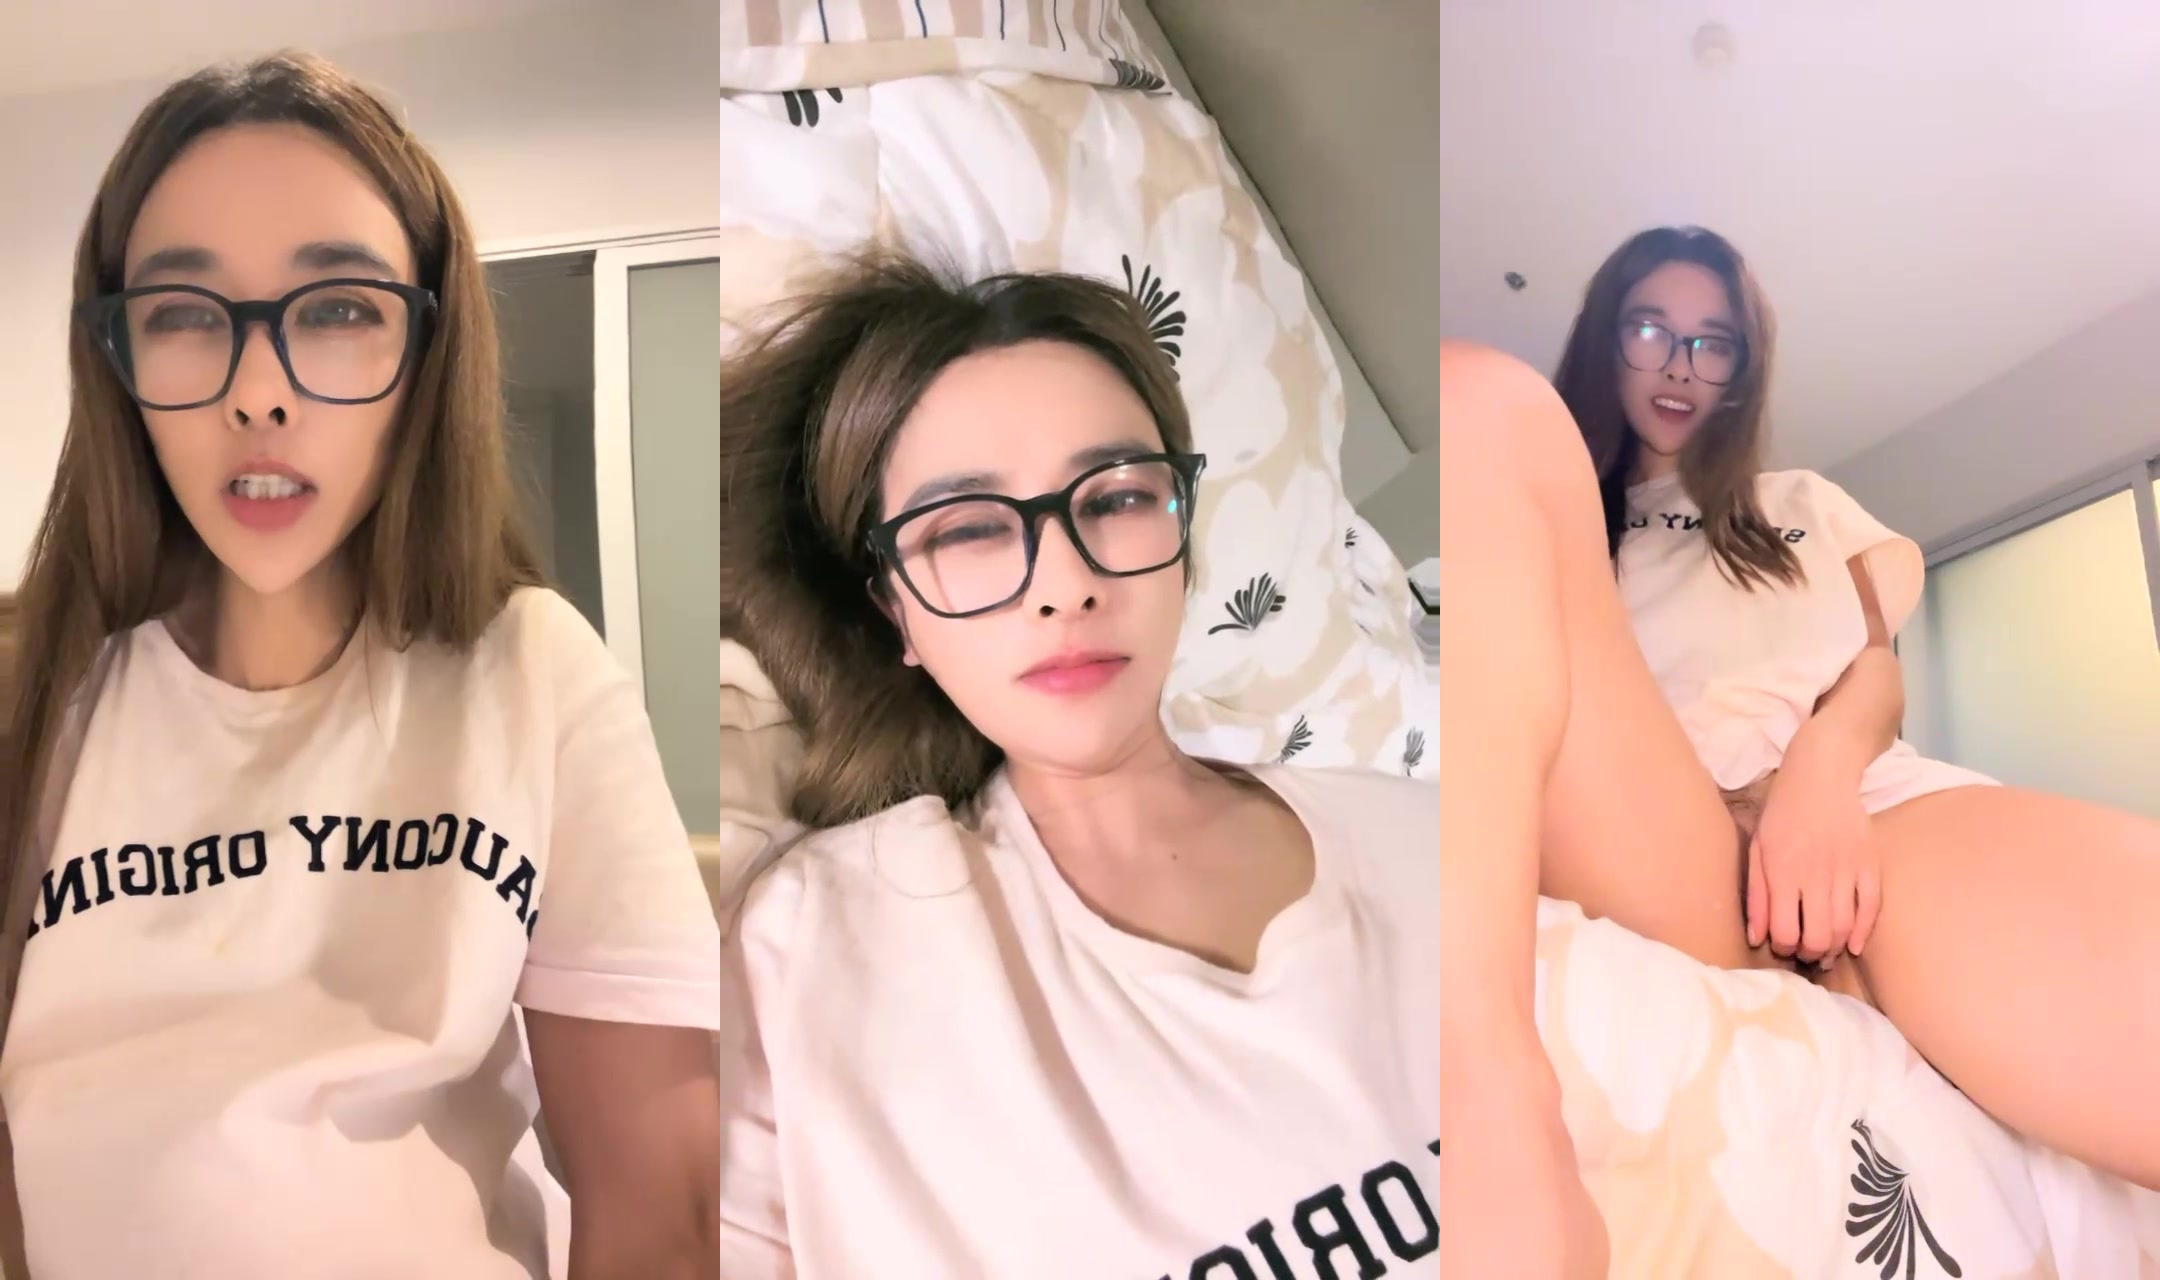 하이 컬러 피트니스 소녀, 아름다운 엉덩이, 20 시간 동안의 시각적 향연 (4)